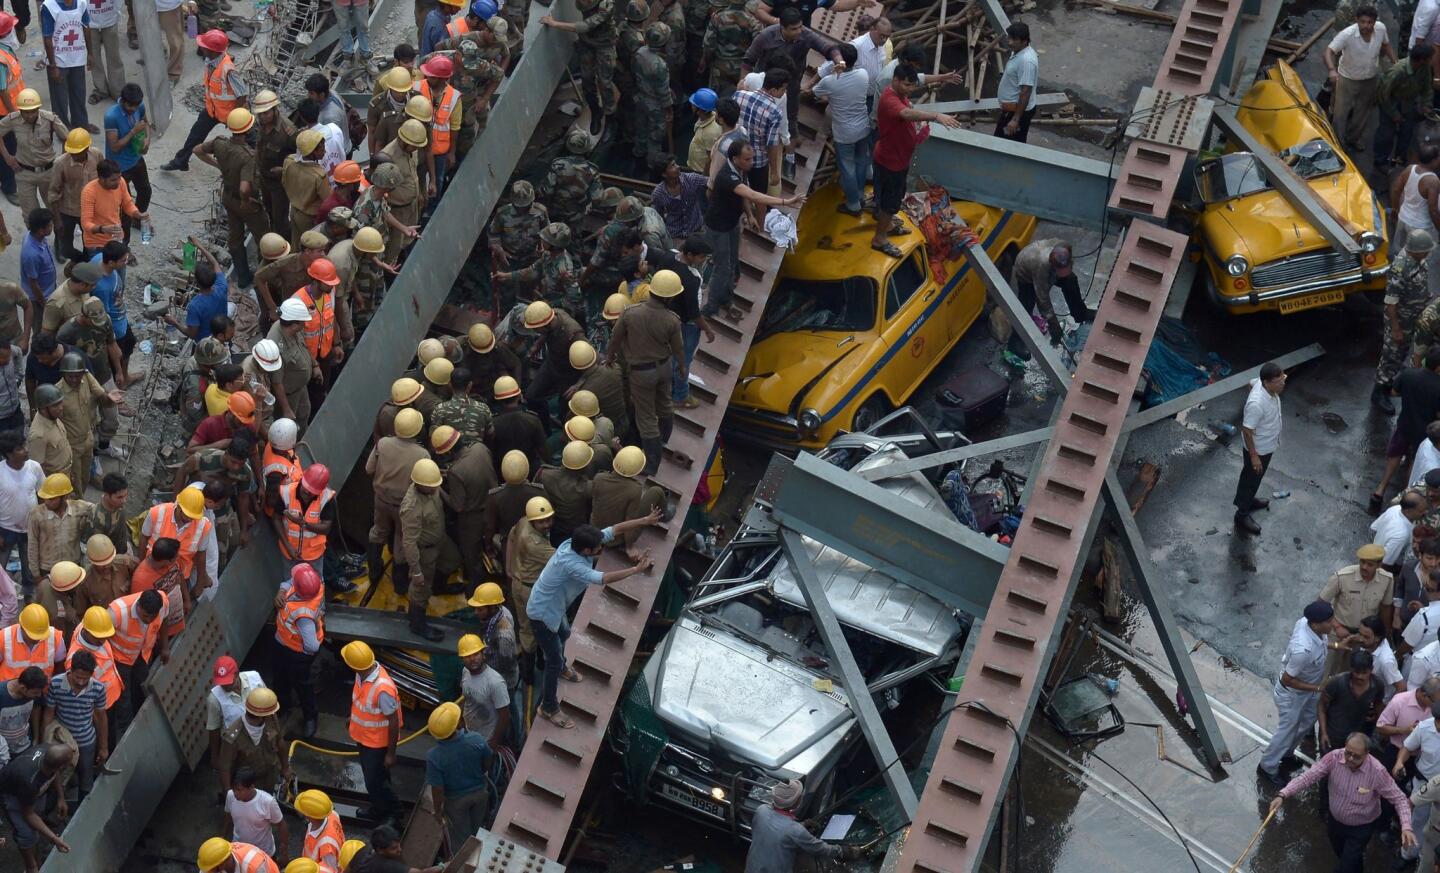 Kolkata overpass collapse